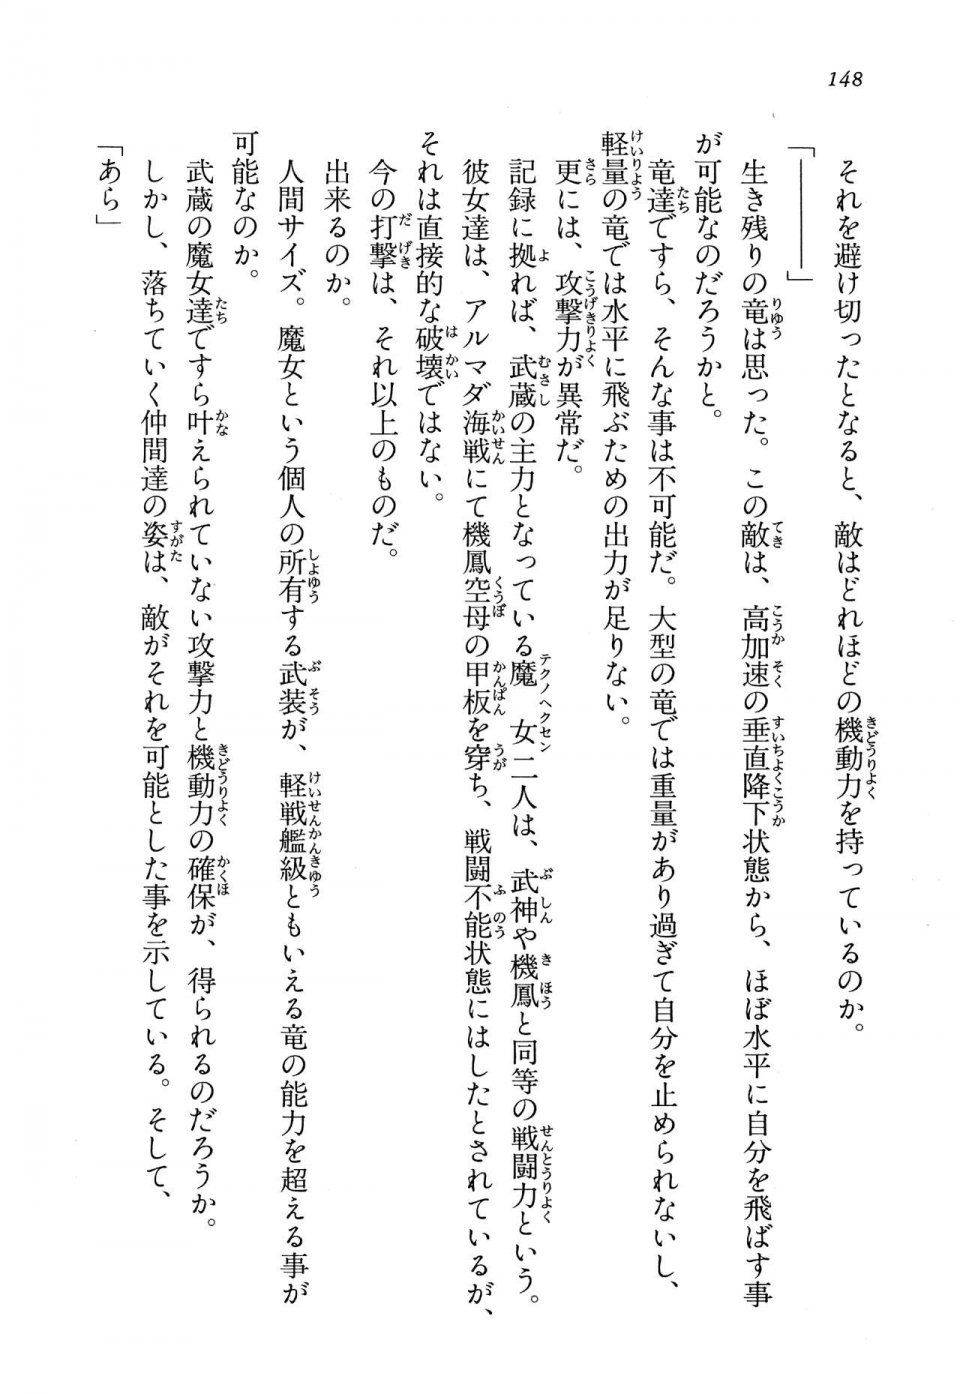 Kyoukai Senjou no Horizon LN Vol 13(6A) - Photo #148